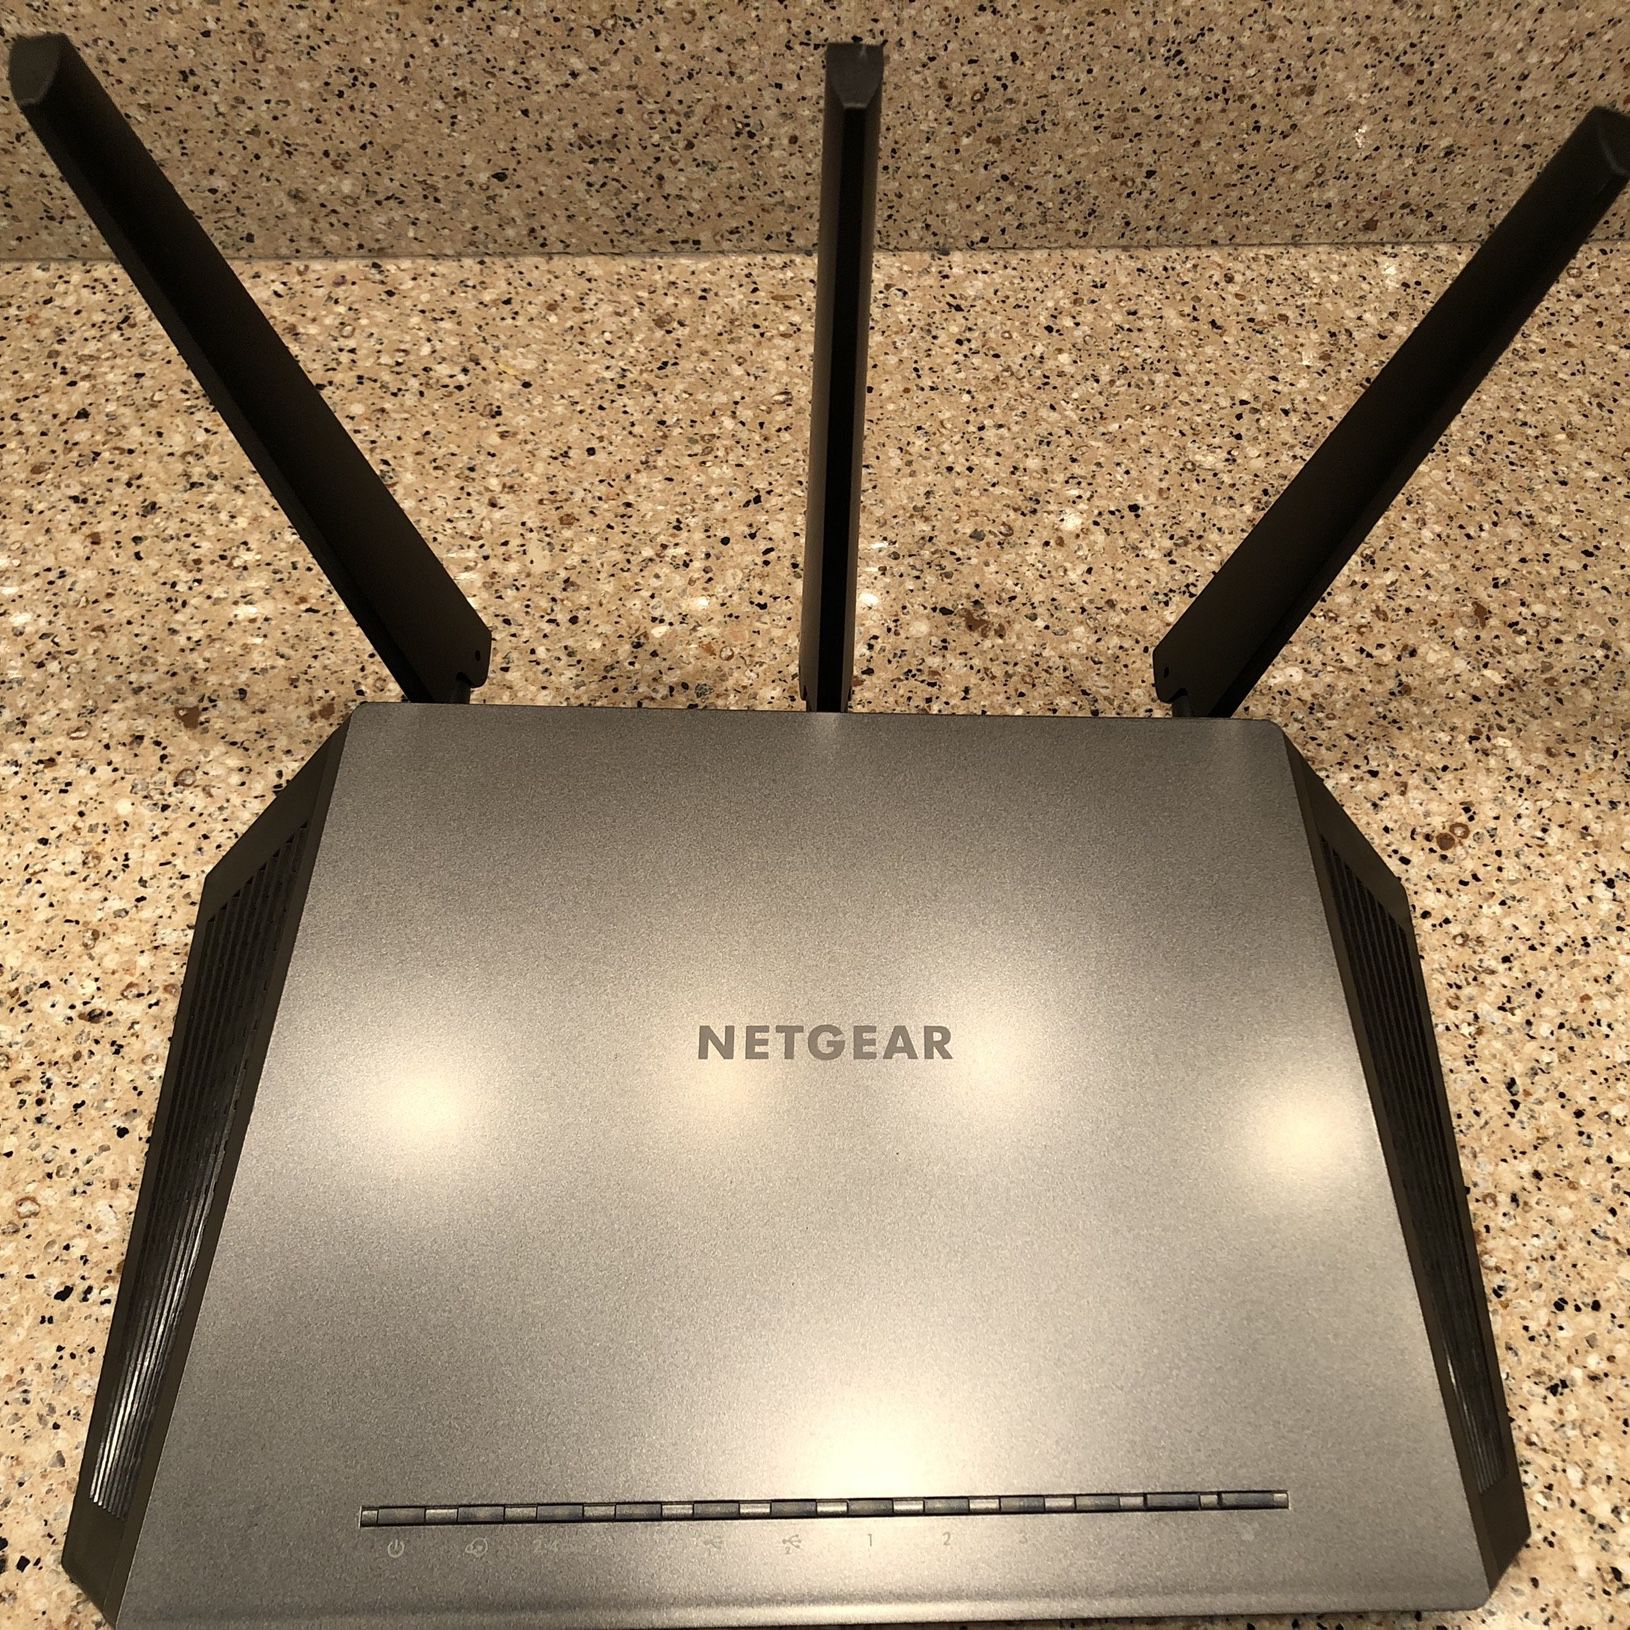 Netgear Nighthawk Smart Wireless Router R7000